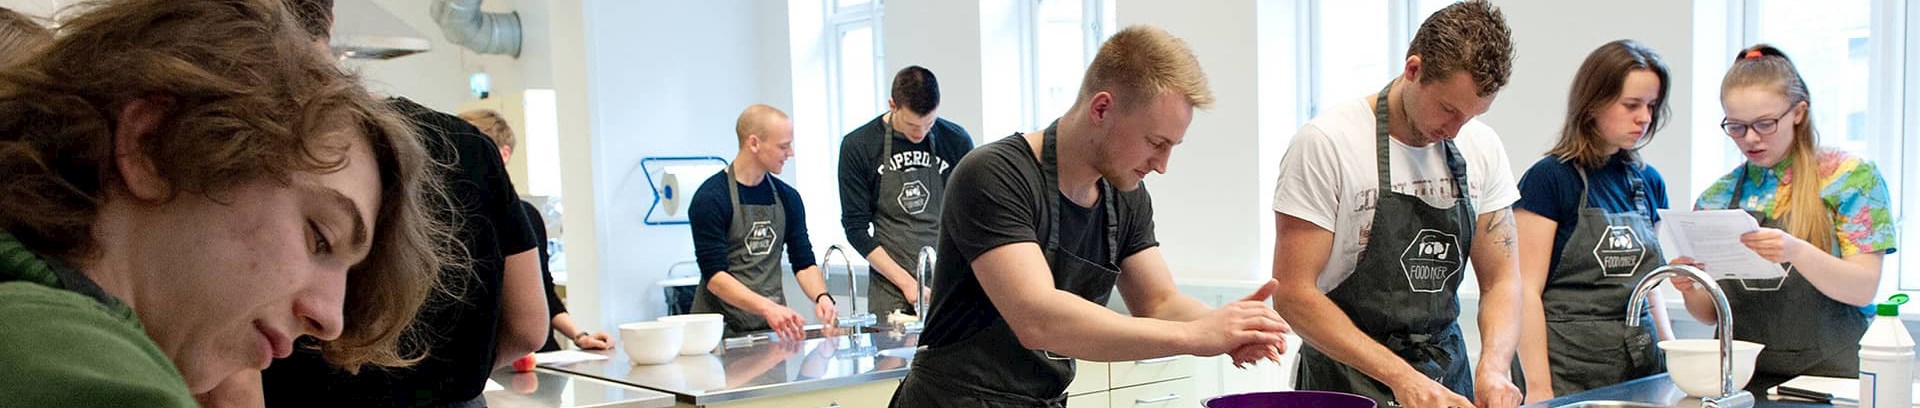 Unge deltagere ved arrangementet Vi leger med mad, ved Food Maker i FOF Aarhus' køkken